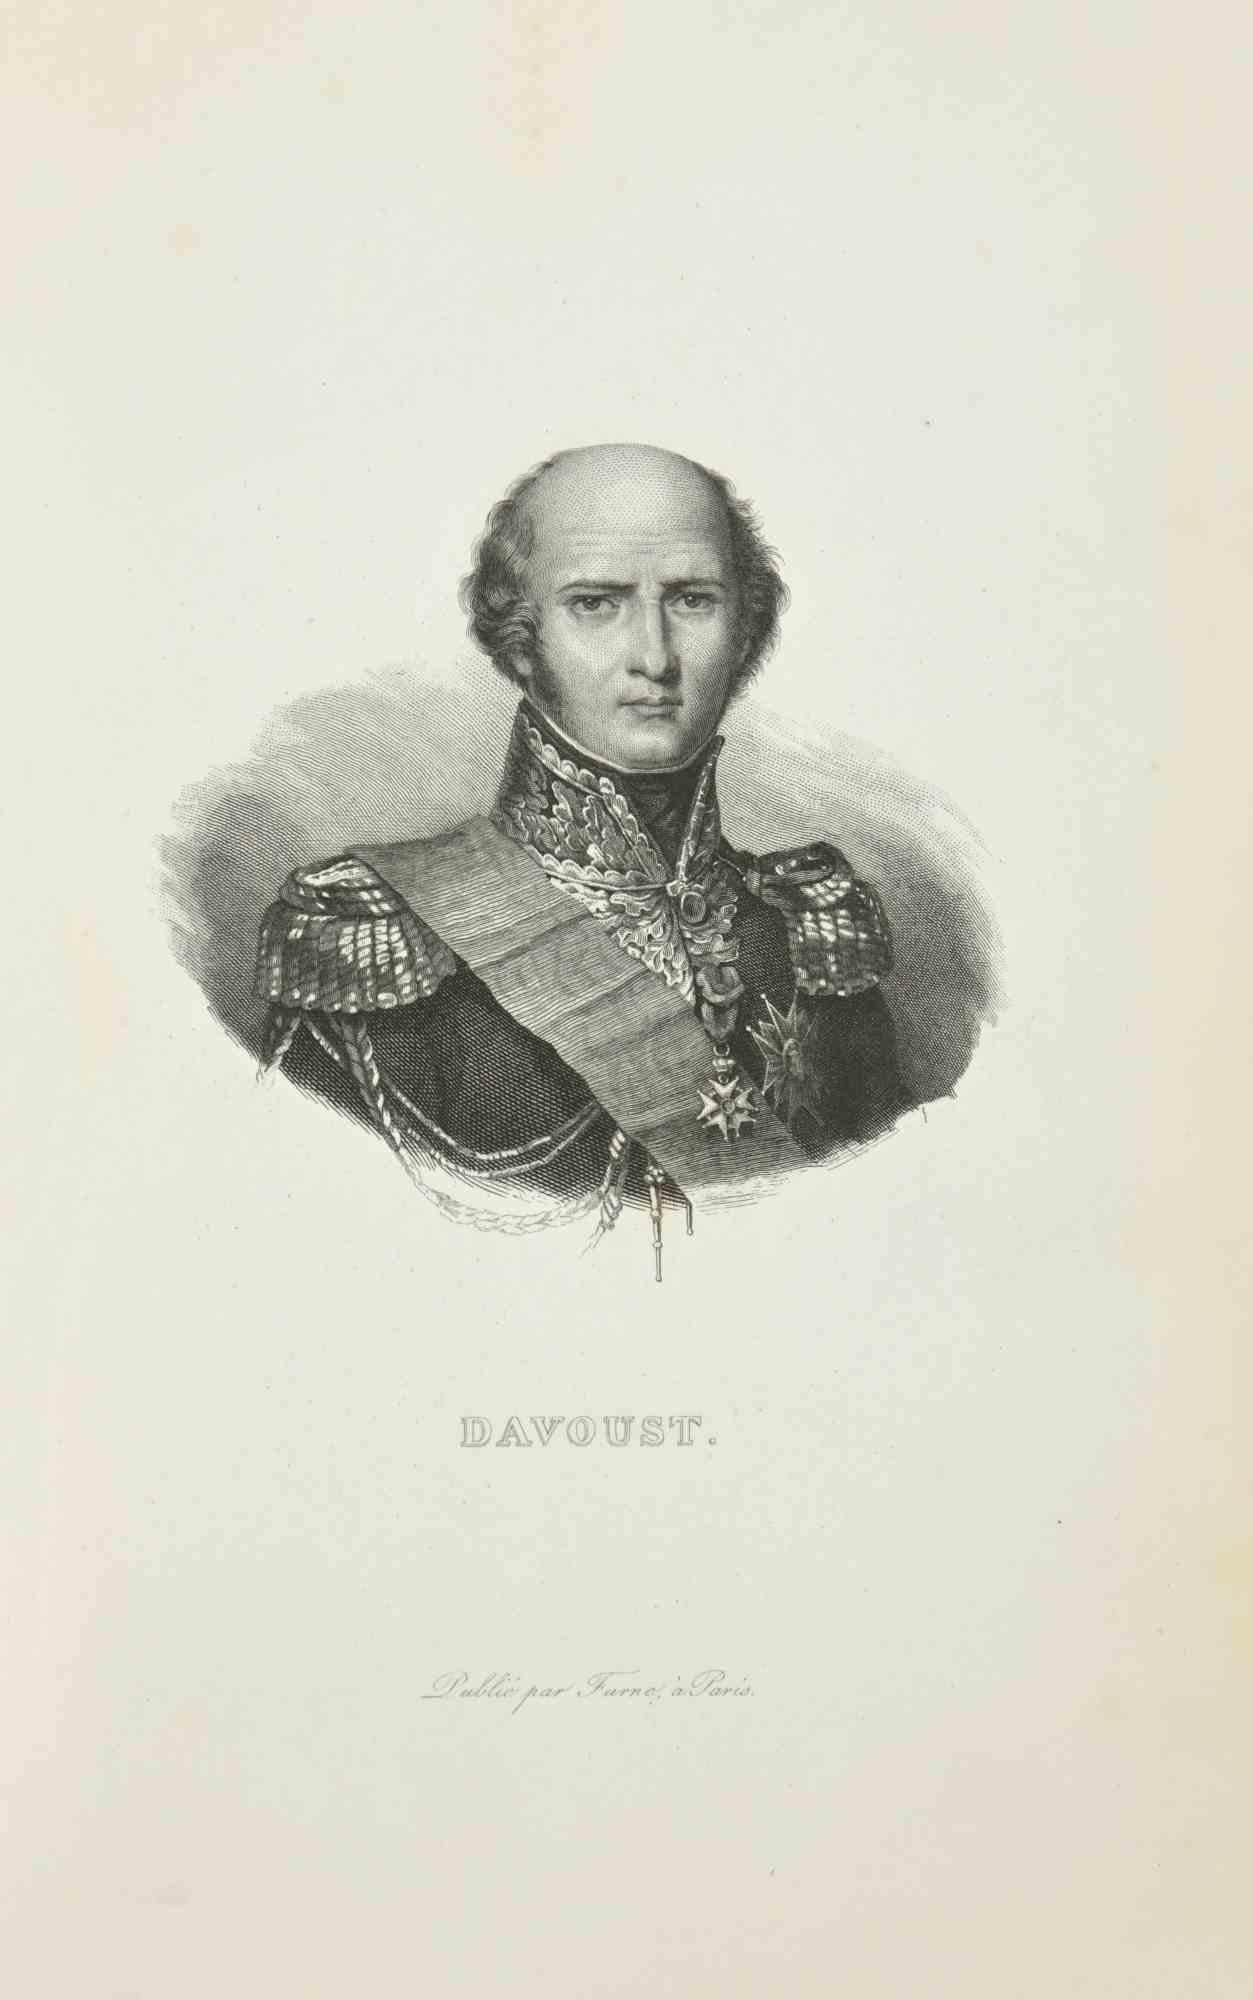 Pierre Francois Tardieu Portrait Print - Davoust - Etching by Pierre François Tardieu - 1837